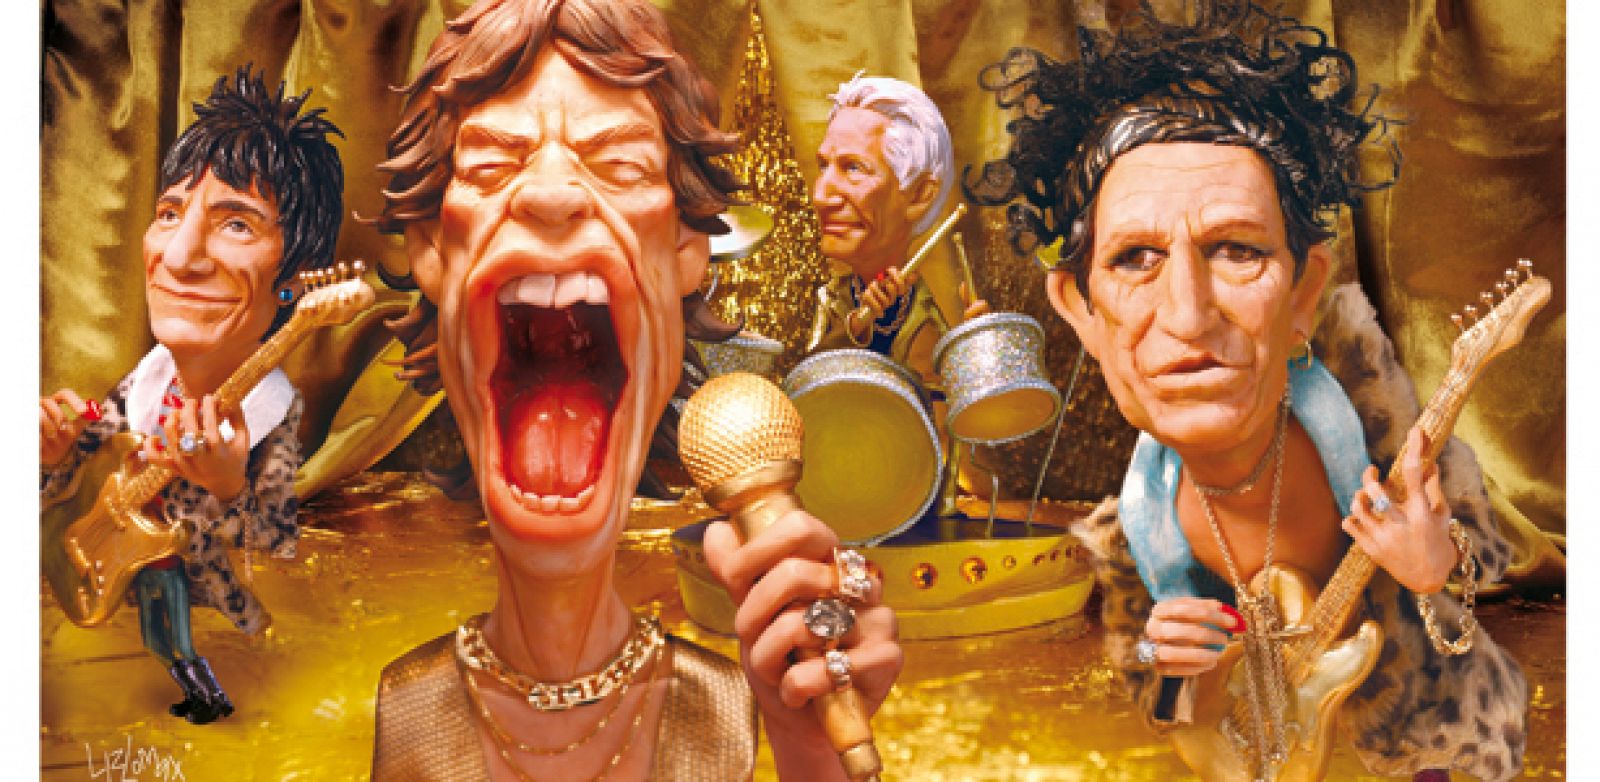 'The Rolling Stones', 2004. Liz Lomax para la revista 'Rolling Stone', arcilla polimérica, pintura de aceite, espuma de aislamiento y fotografía digital